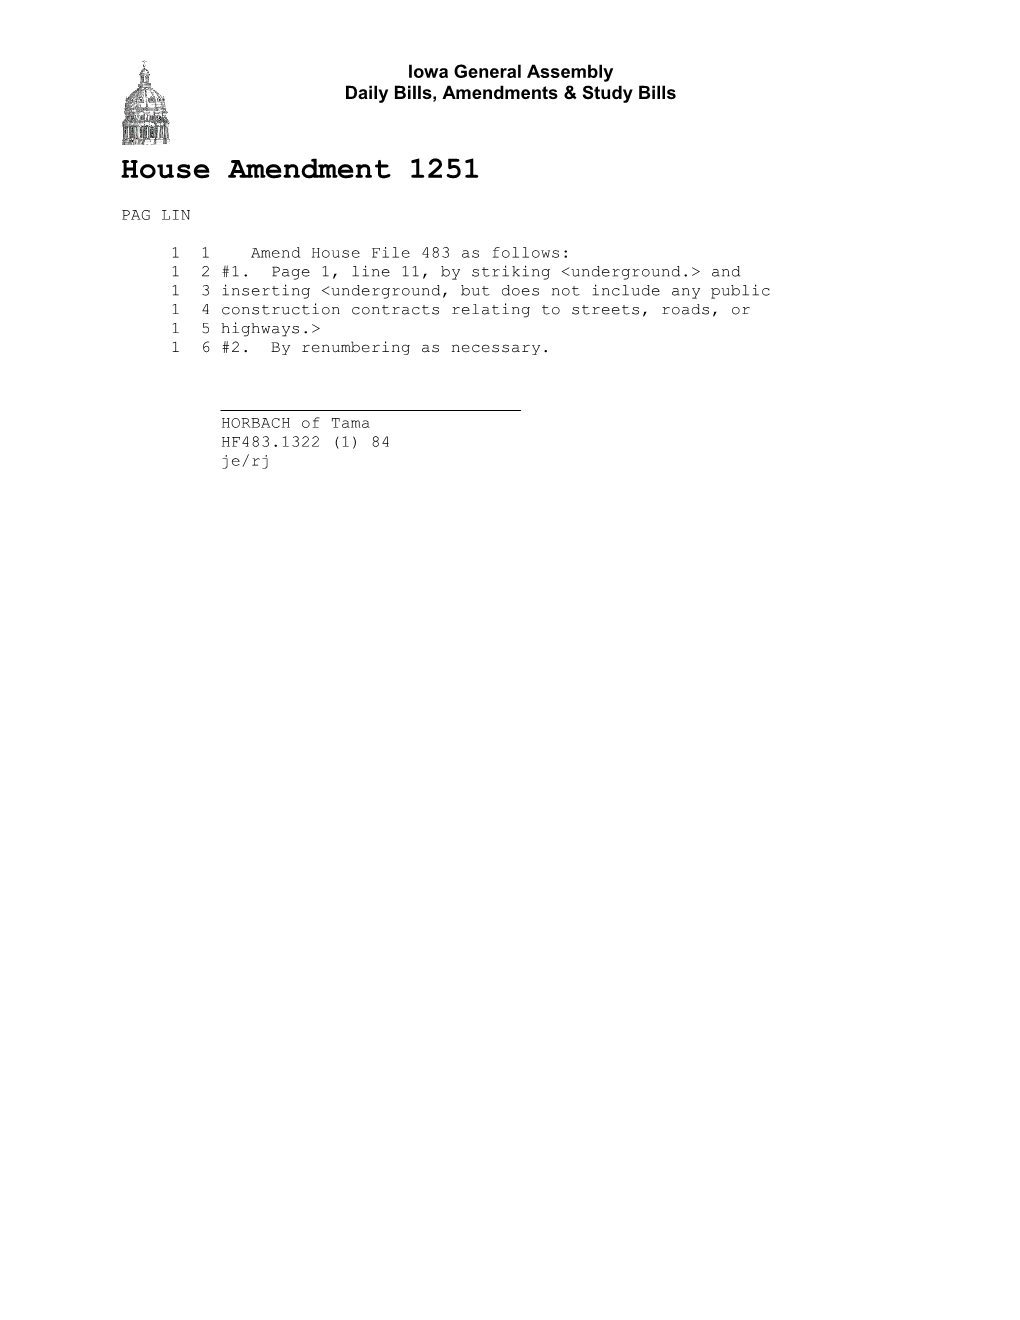 Daily Bills, Amendments & Study Bills